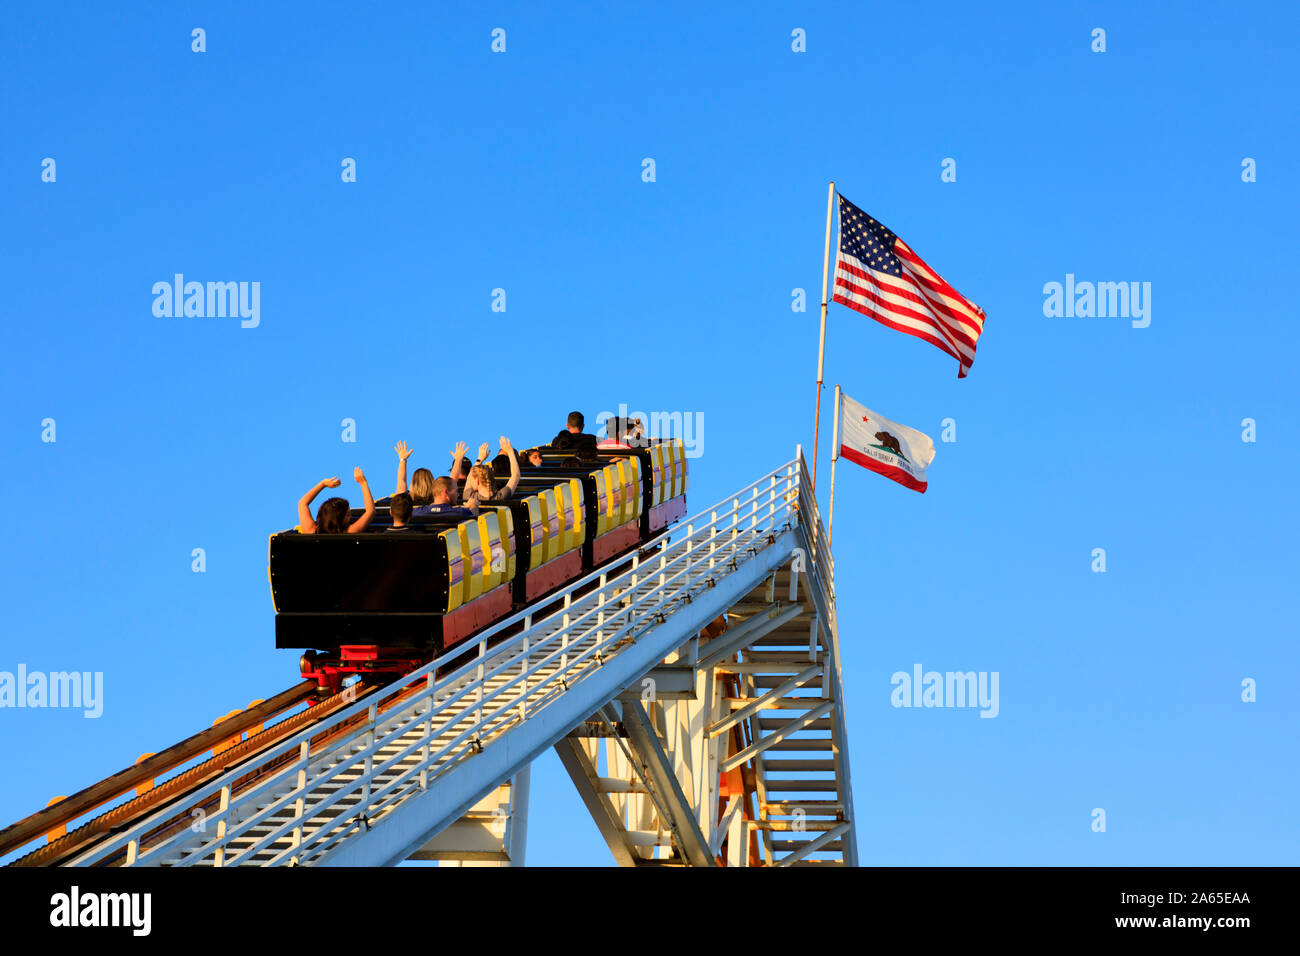 Carrelli pieni di gente sulle montagne russe, Santa Monica Pier, Pacific Park, Los Angeles, California, Stati Uniti d'America. Ottobre 2019 Foto Stock